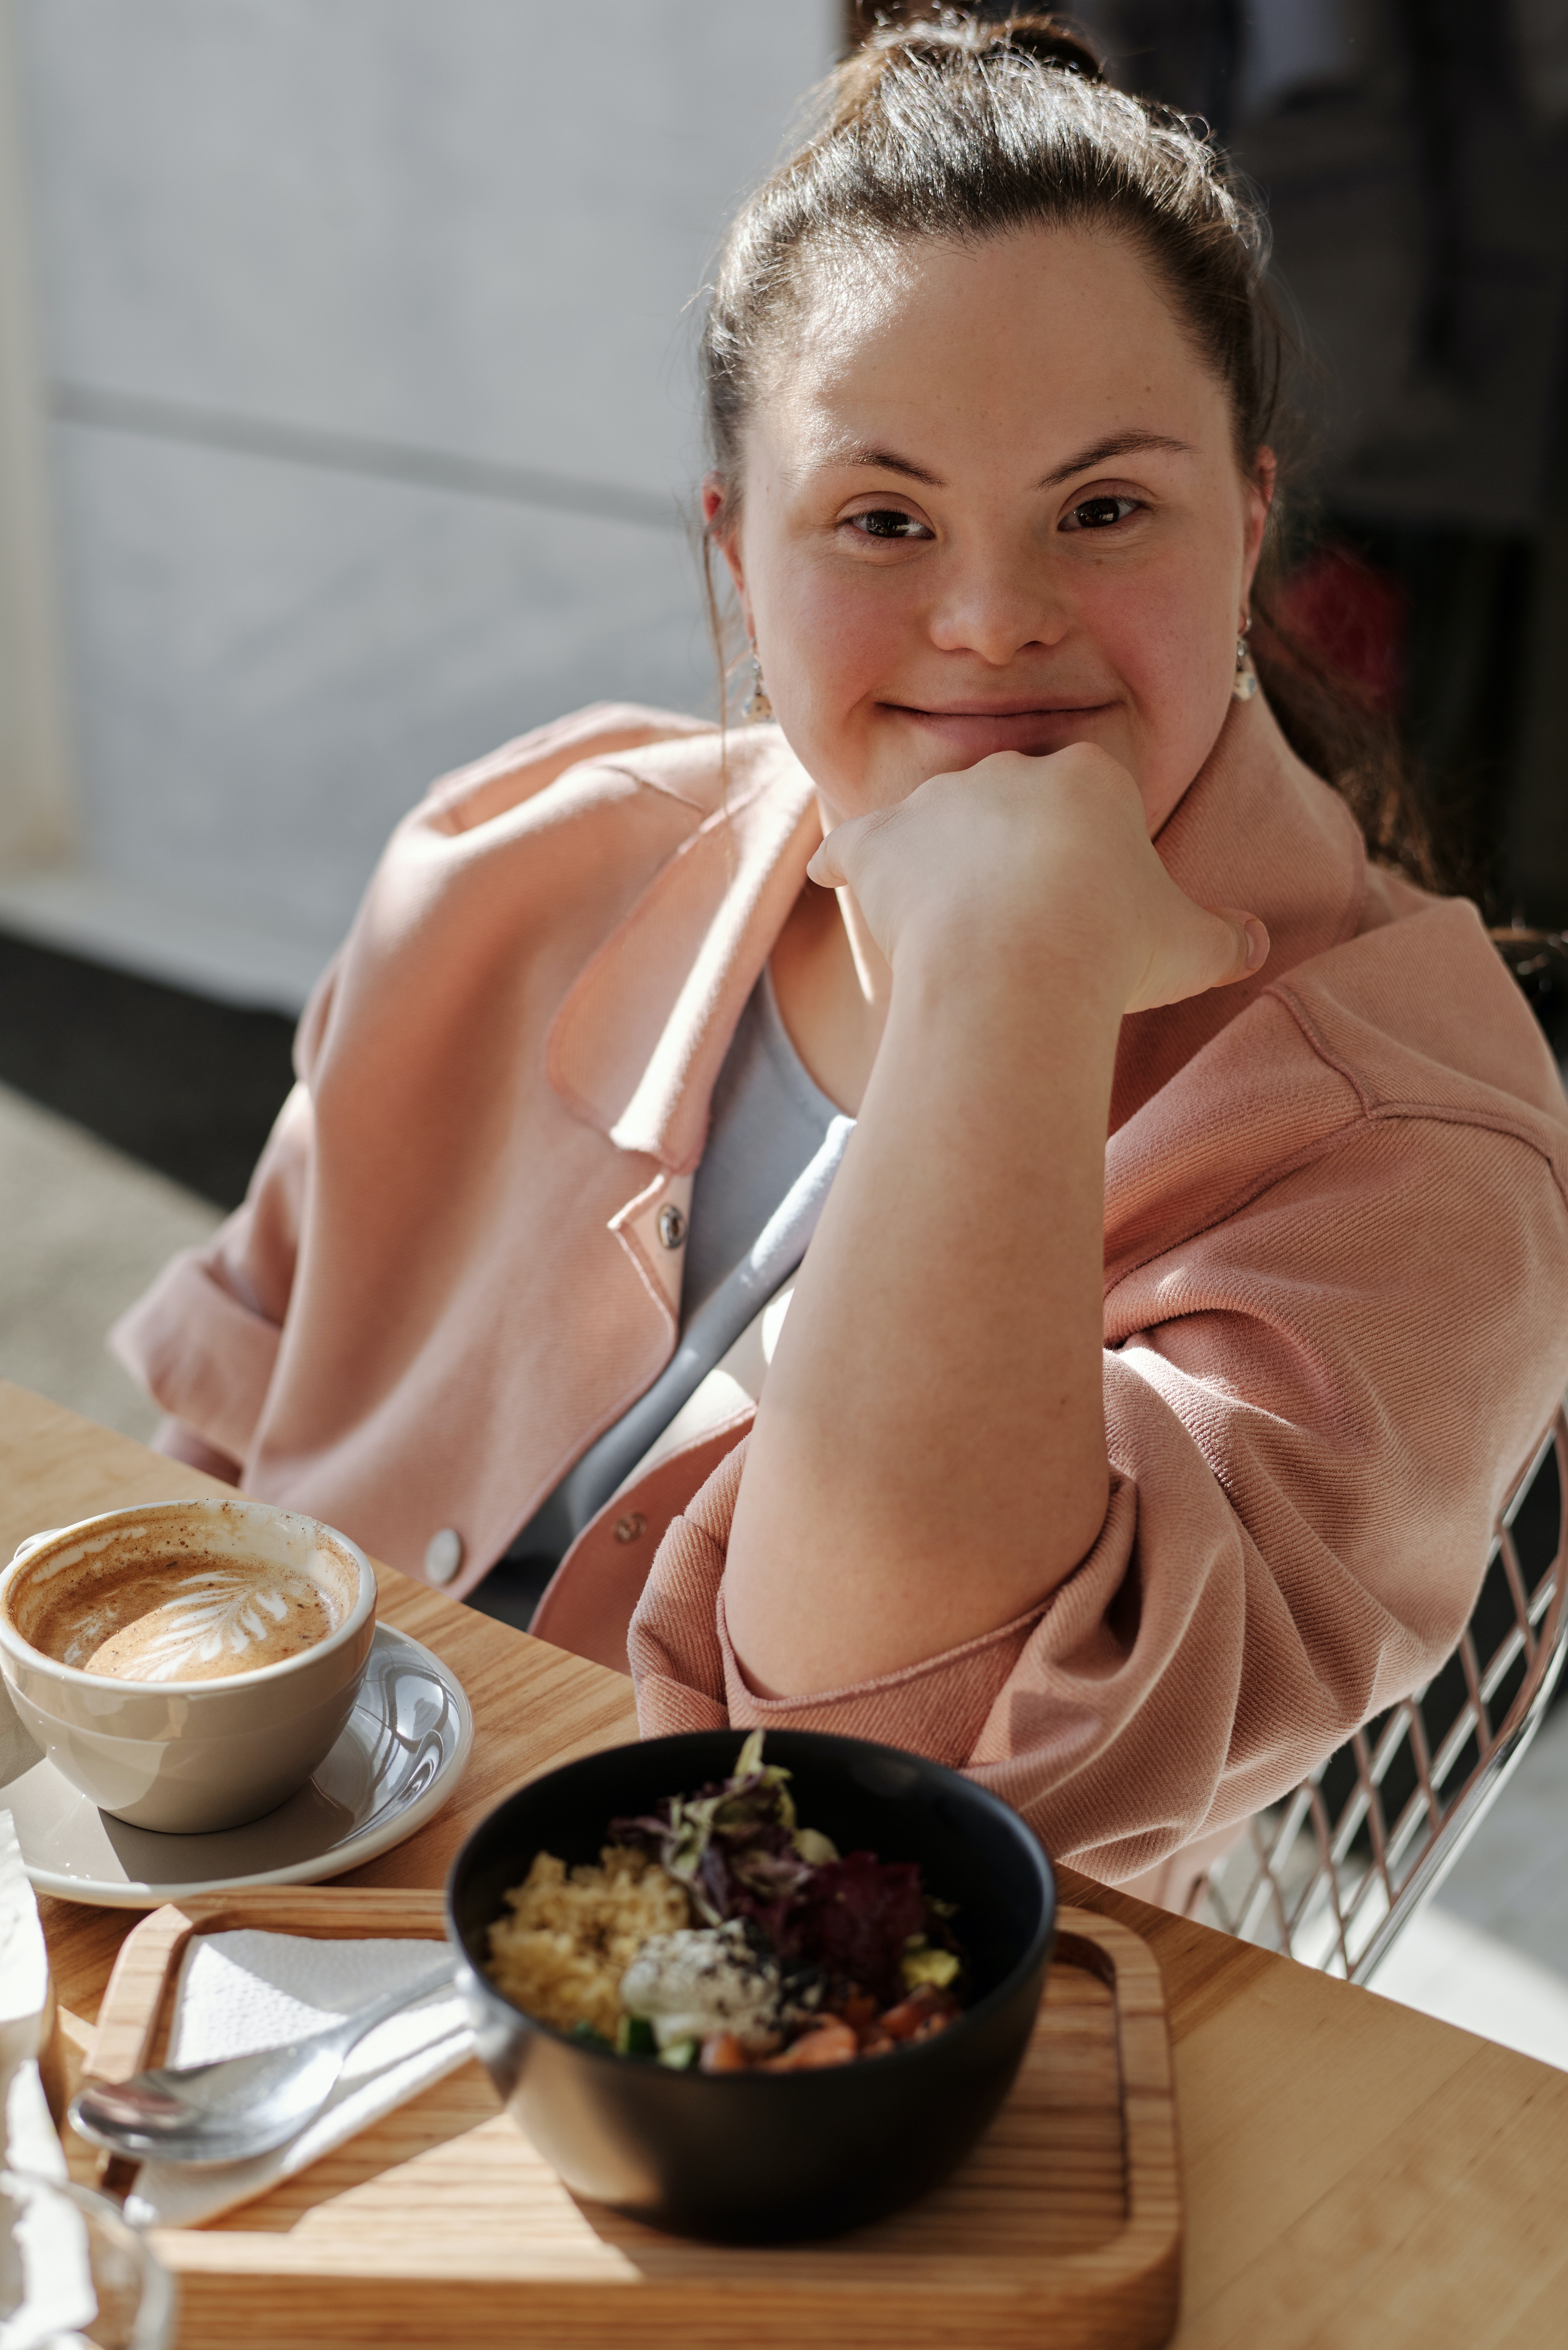 Betreuung von Menschen mit Behinderung Thun: Glücklich wirkende Frau mit Trisomie 21 an Kaffeetisch